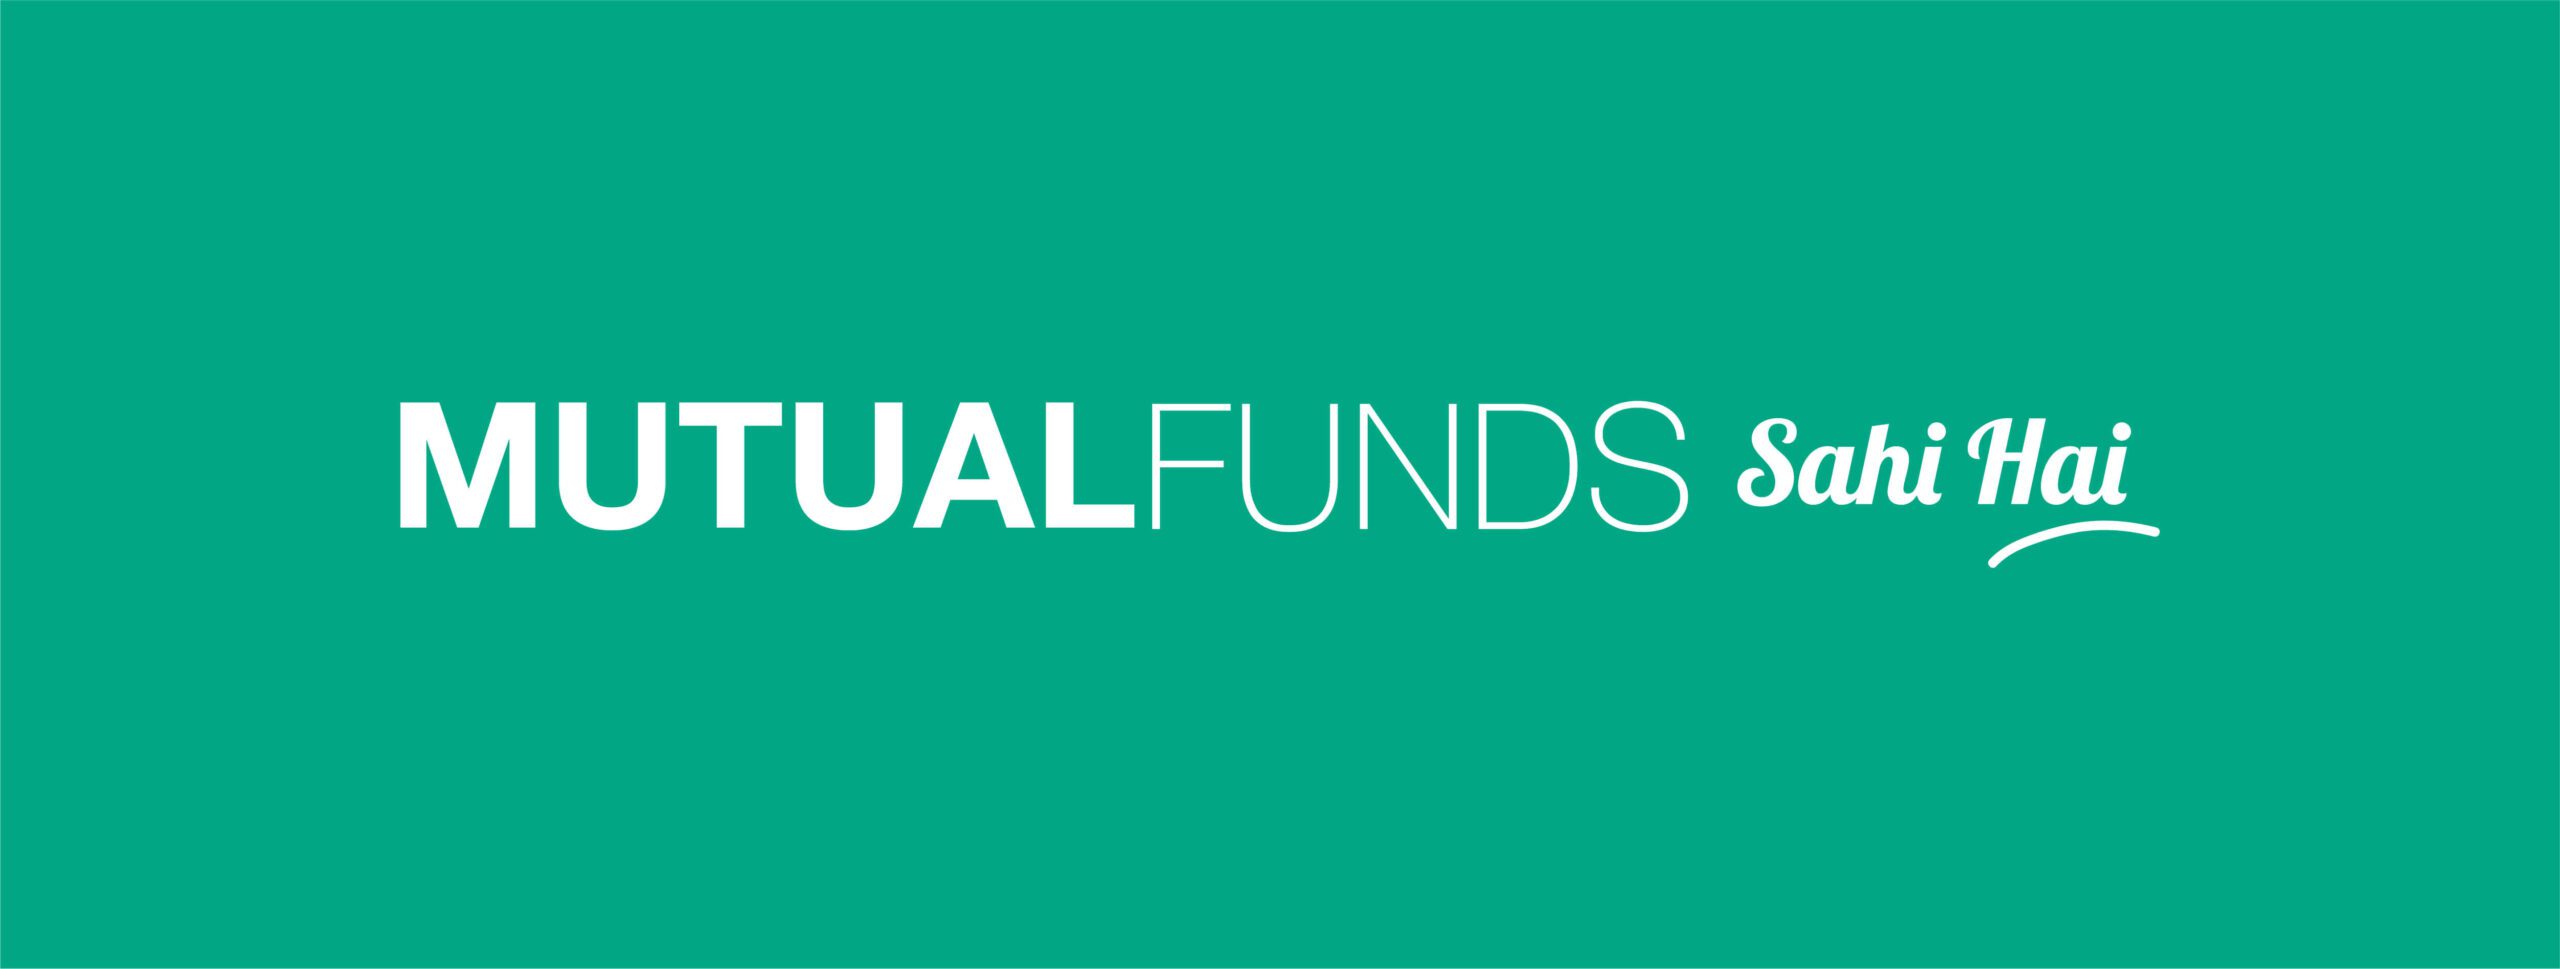 Mutual Fund Sahi Hai Banner